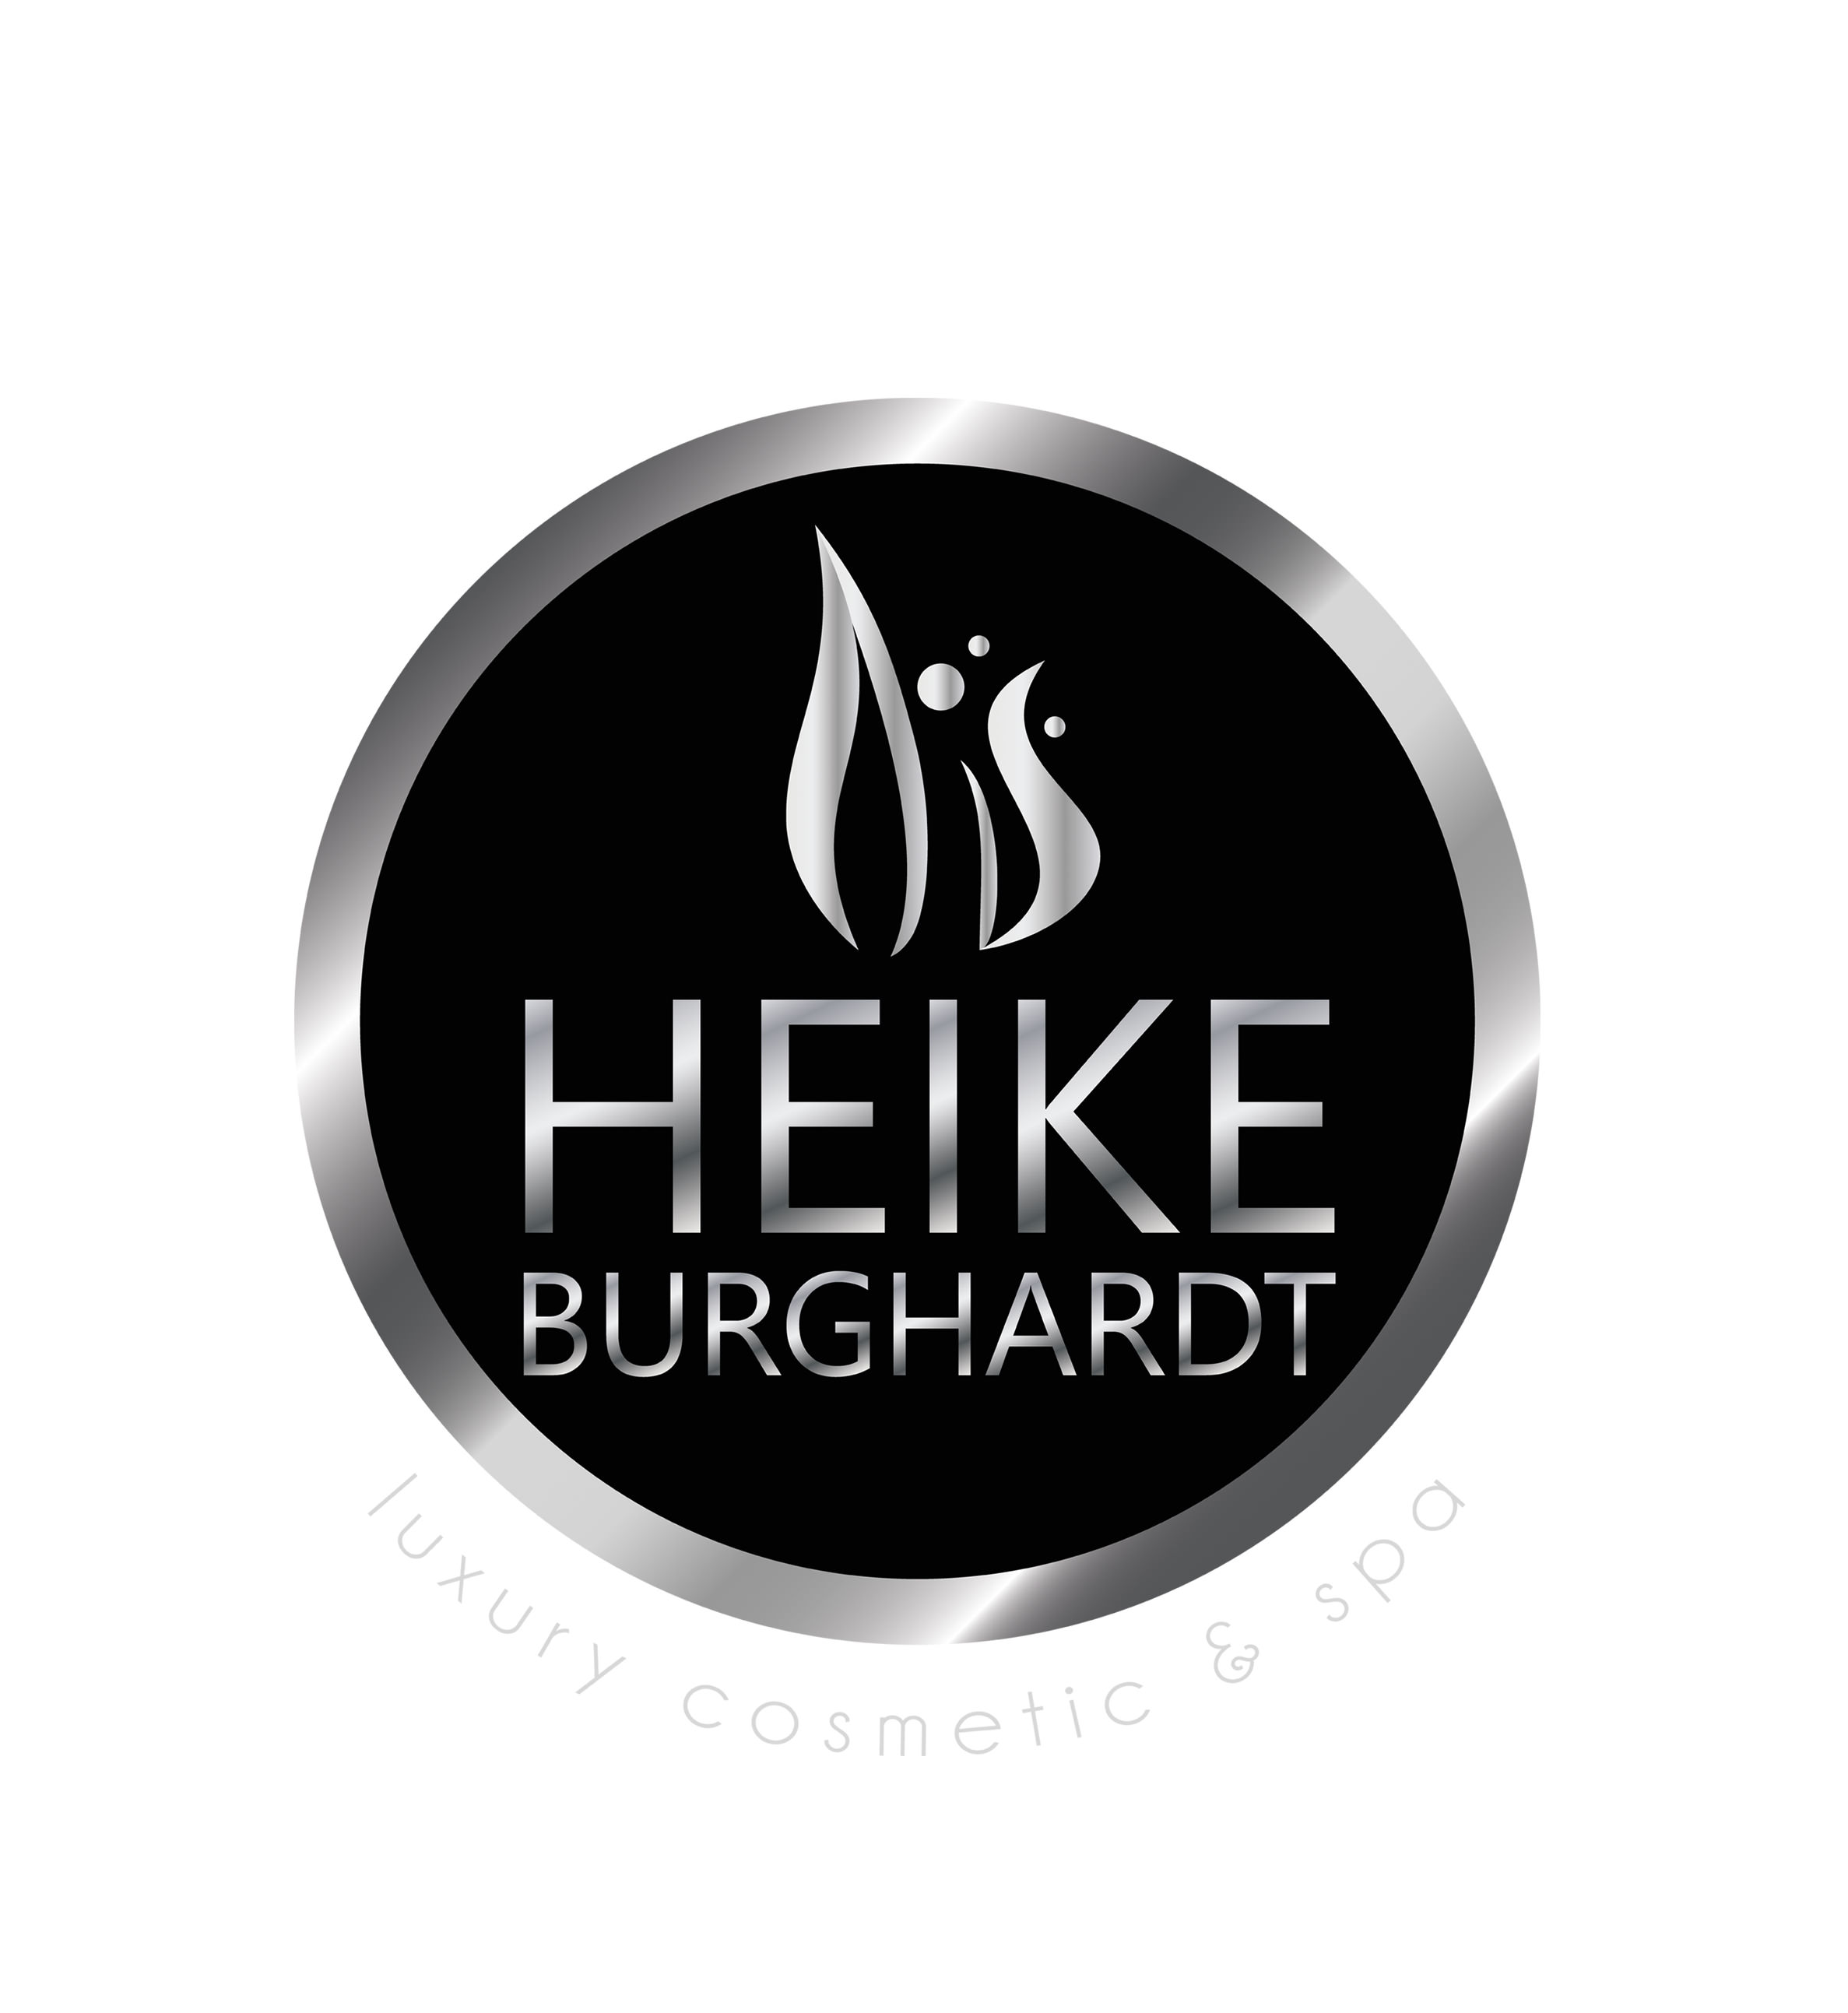 HeikeBurghardt